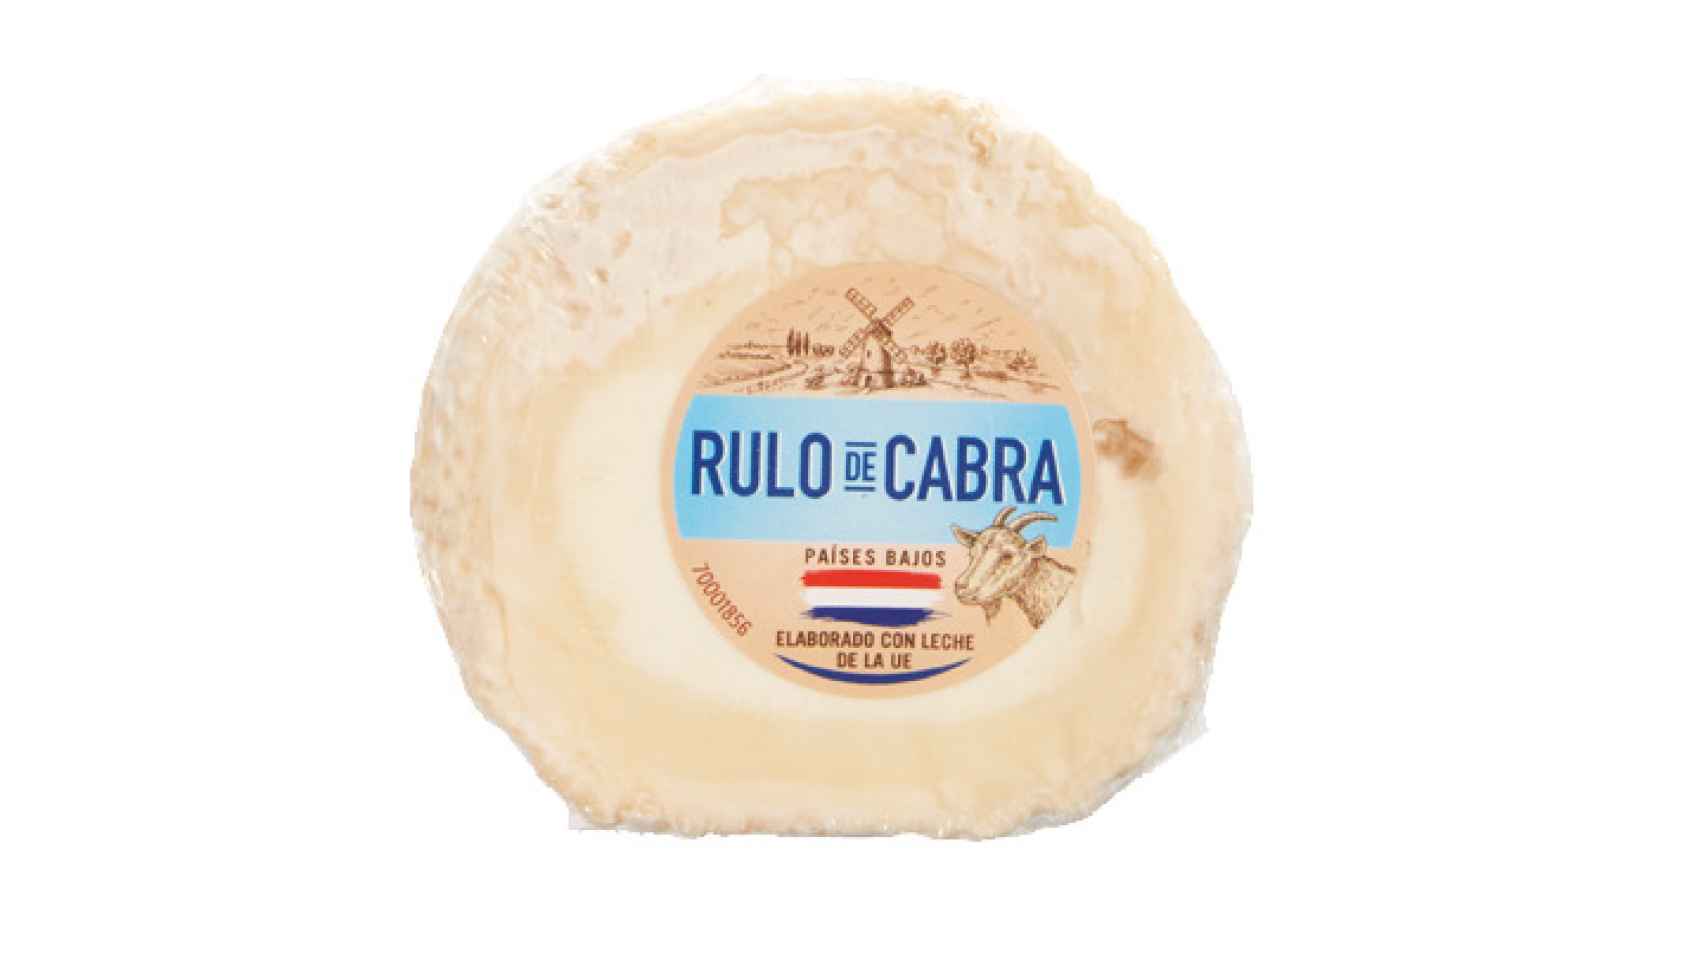 El queso de rulo de cabra que comercializa Lidl y en el que se ha detectado Listeria.